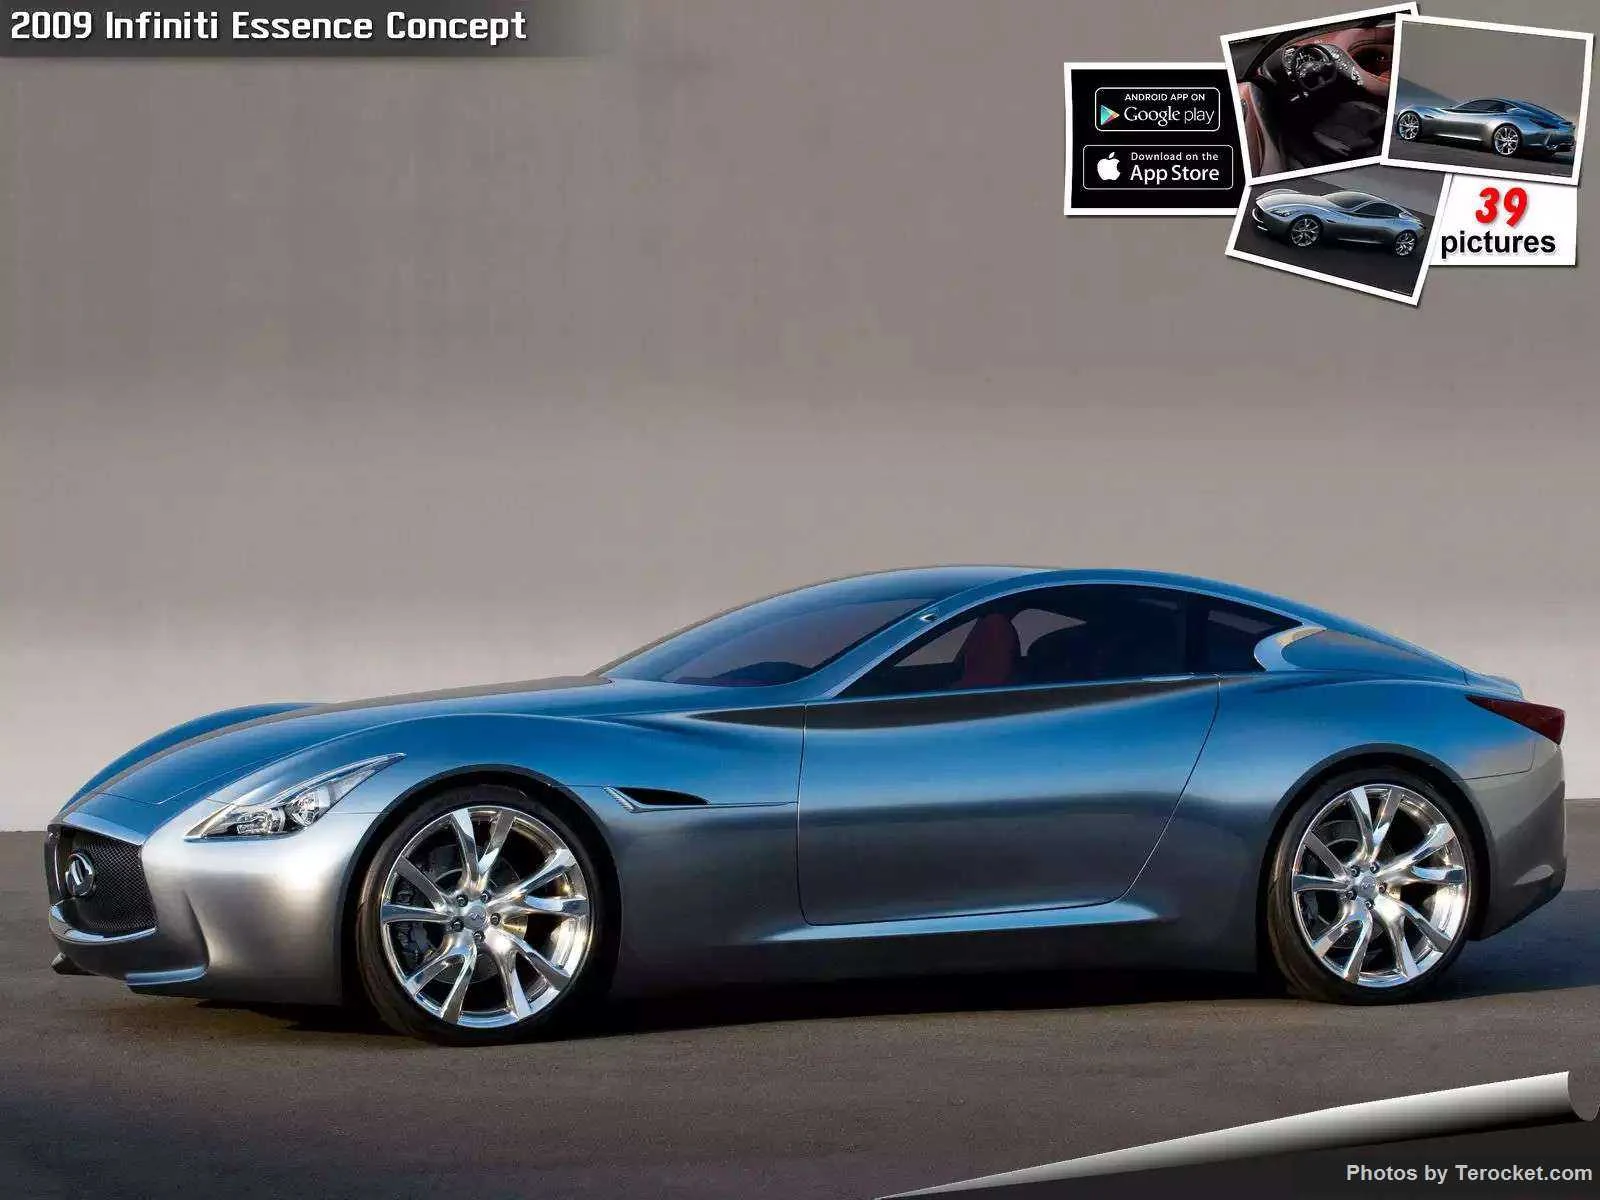 Hình ảnh xe ô tô Infiniti Essence Concept 2009 & nội ngoại thất